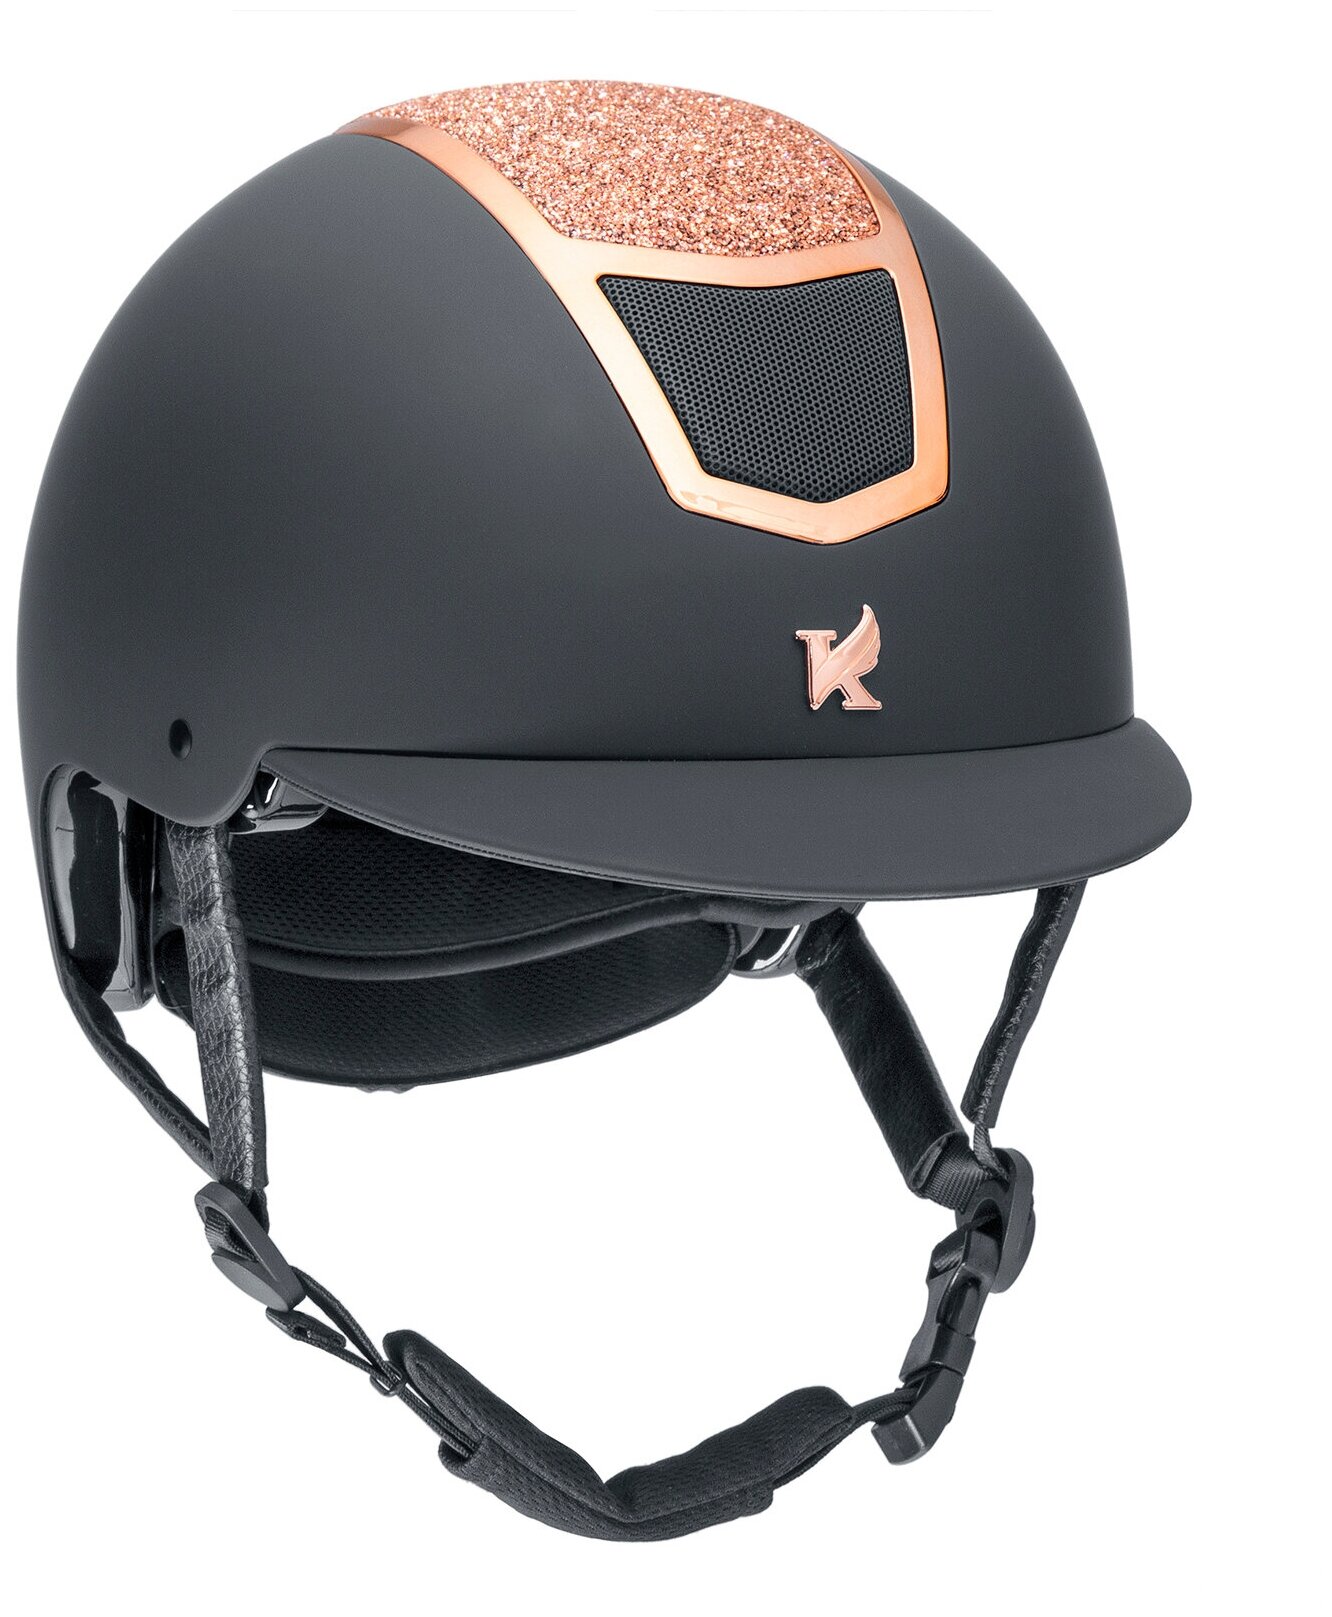 Шлем для верховой езды с регулировкой SHIRES Karben "Valentina", обхват головы 53-55 см, черный/розовое золото (Великобритания)